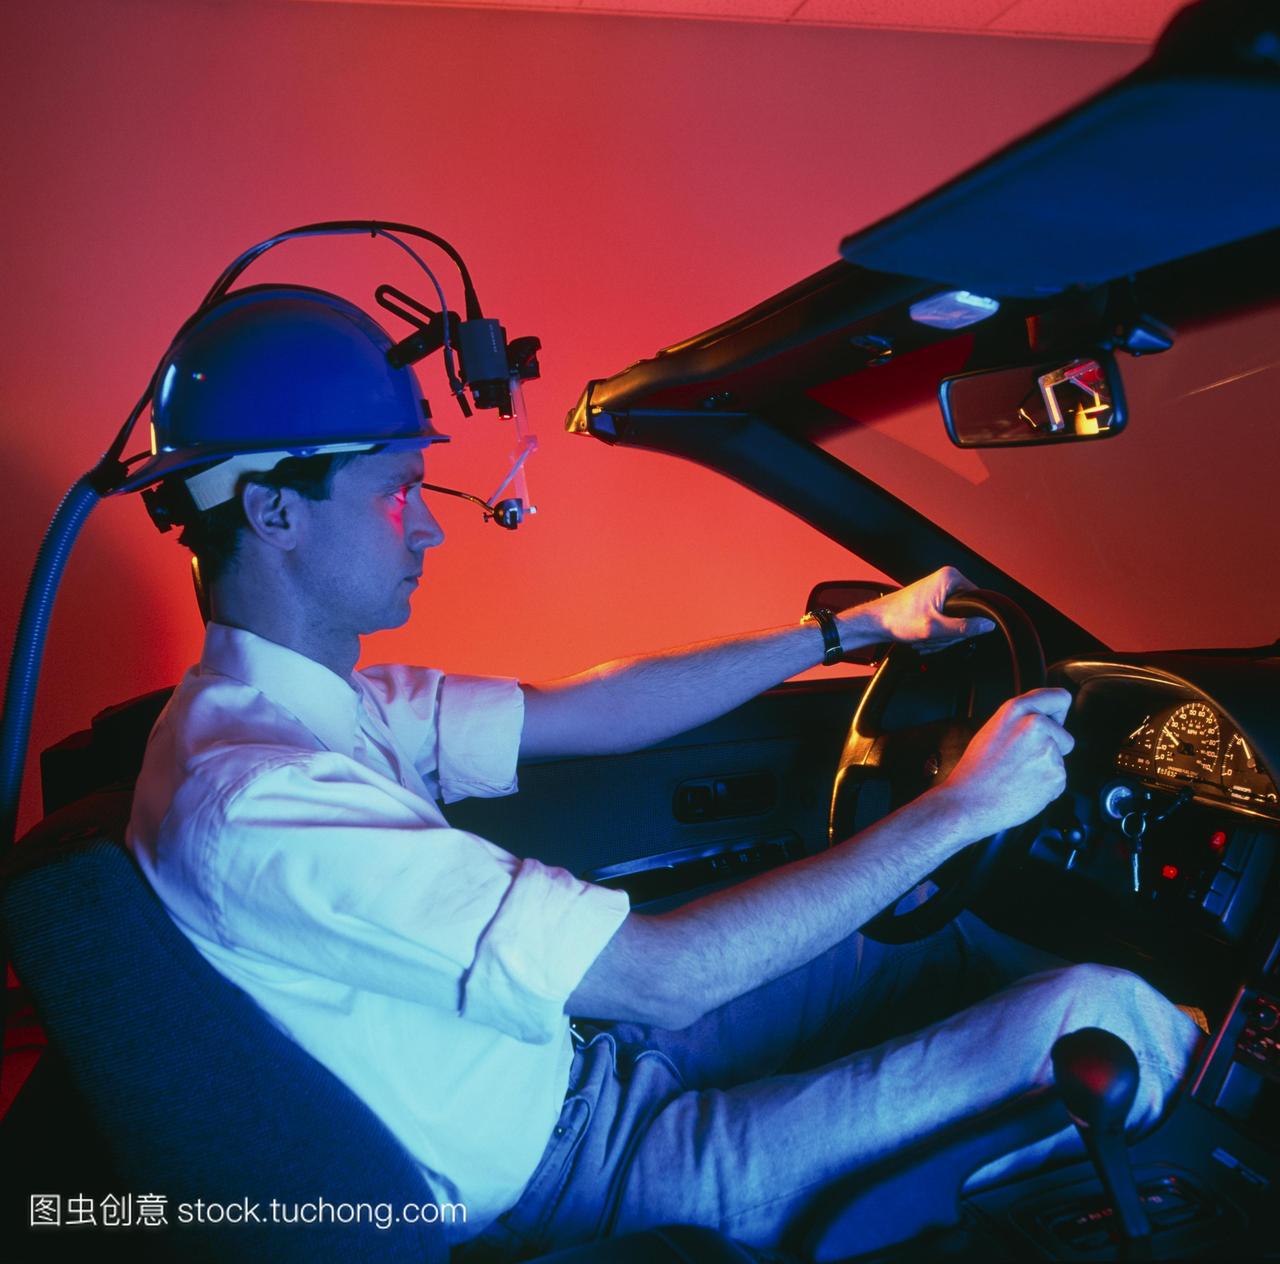 驾驶模拟器。男人在一个虚拟现实driv-ing模拟